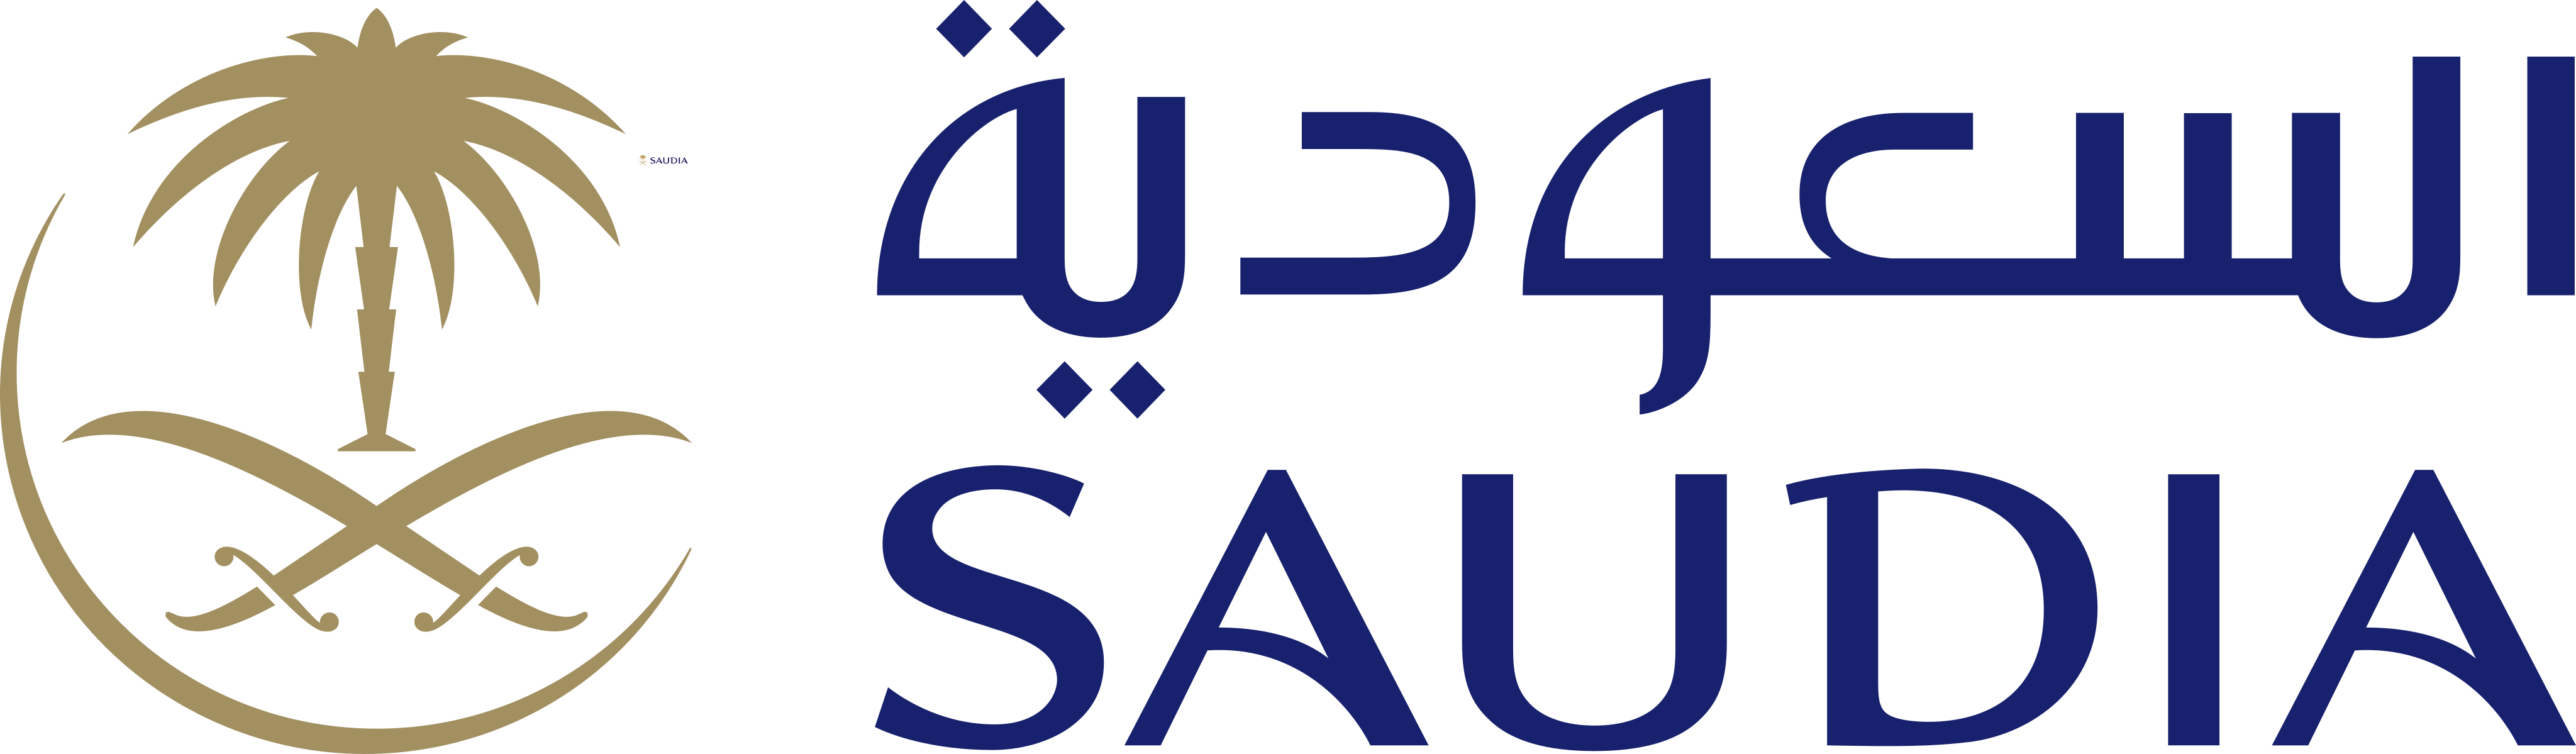 saudia logo 1 - Saudia Logo